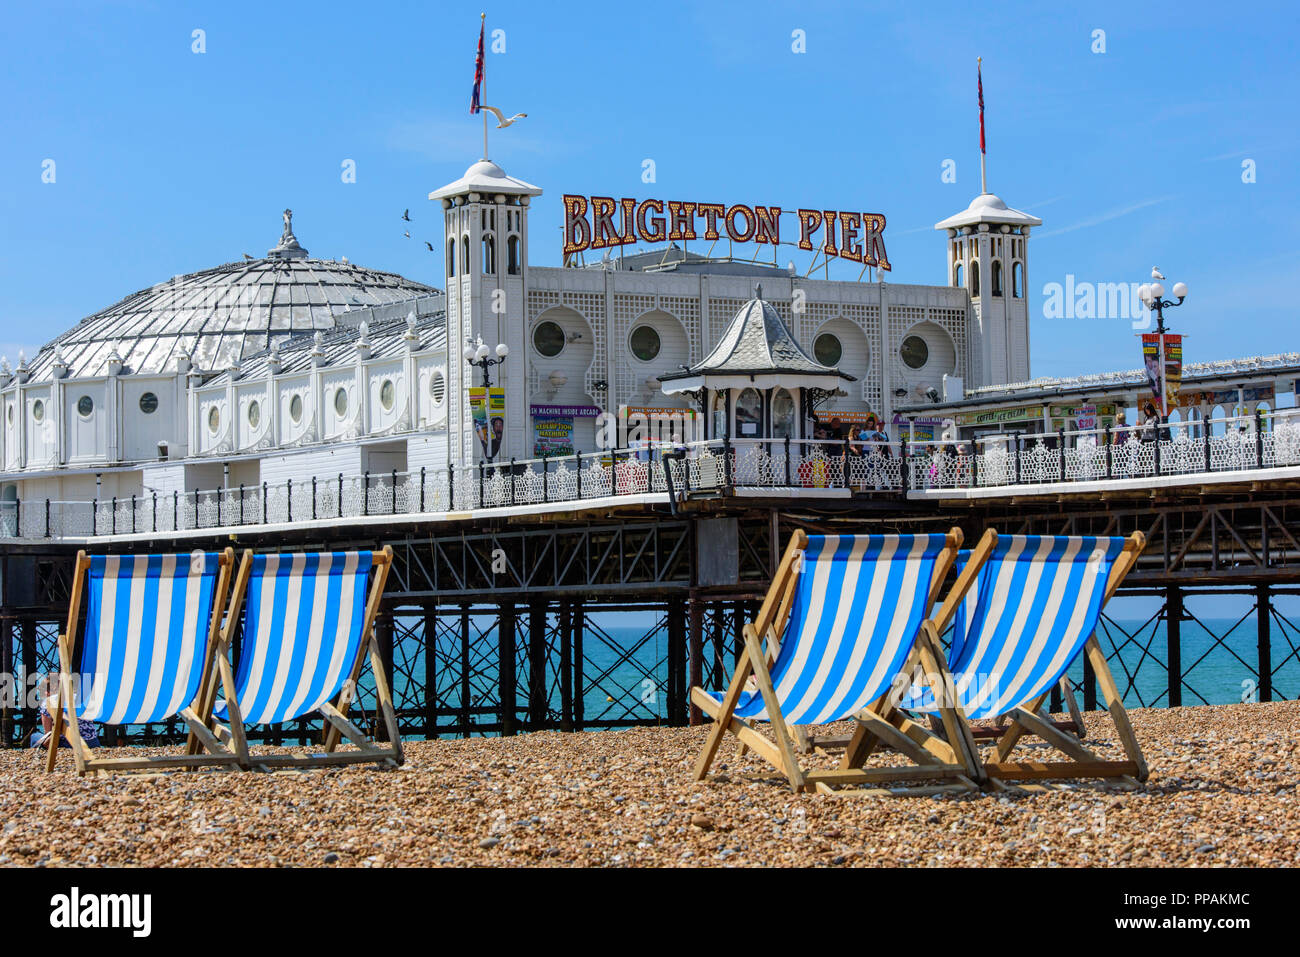 Vue de la plage de la célèbre structure victorienne Palace Pier de Brighton, Brighton, East Sussex, Angleterre, Royaume-Uni. Banque D'Images